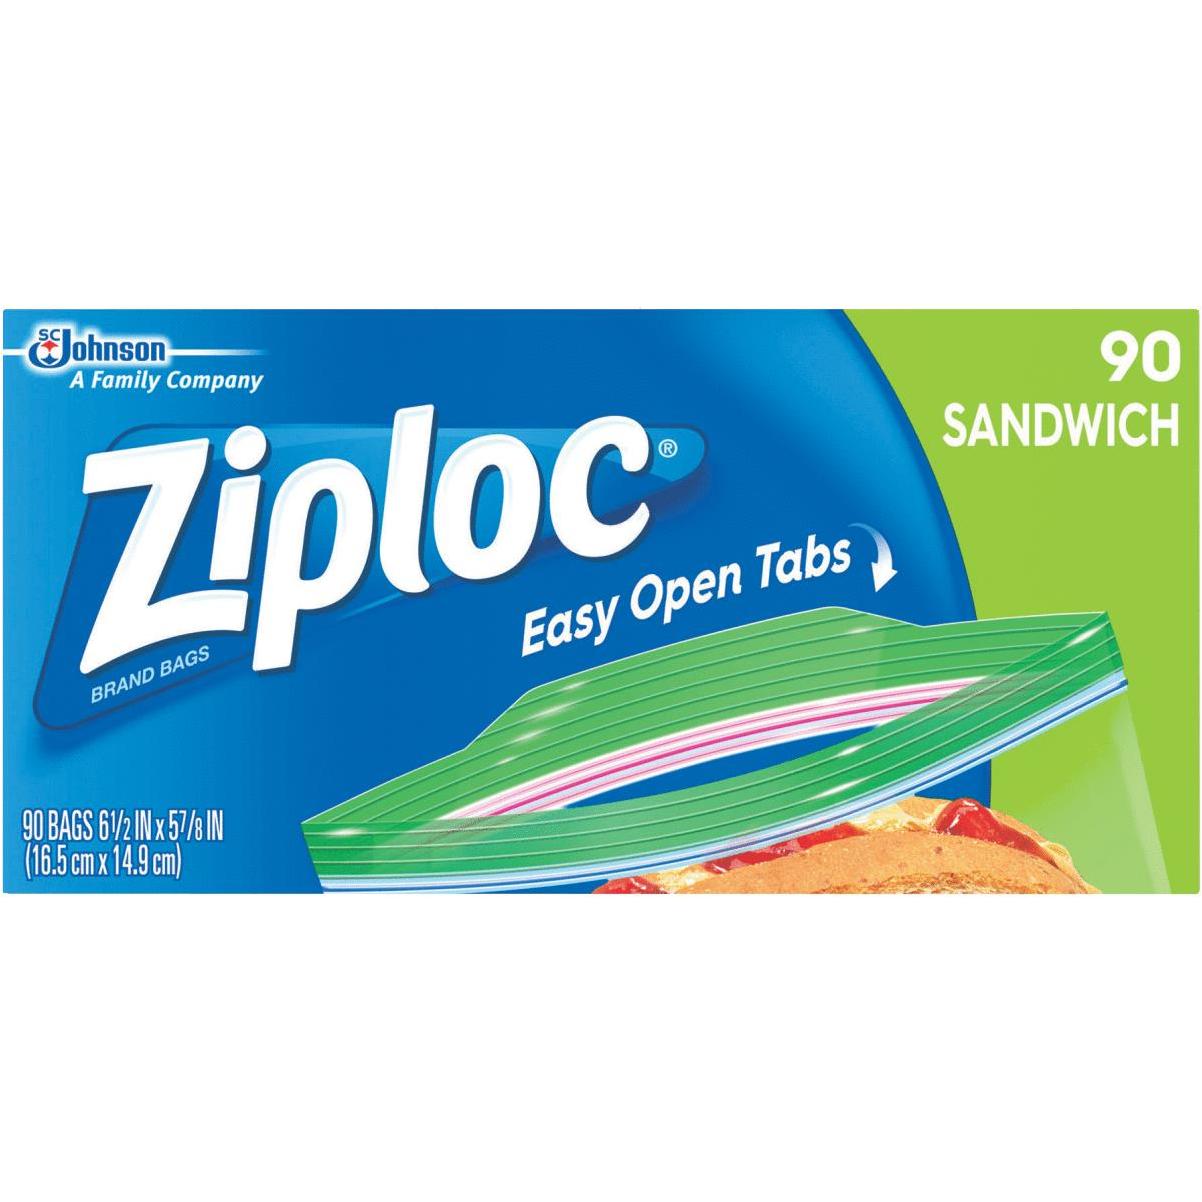 Ziploc Easy Open Tabs Freezer Gallon Bags, 152 Count (Pack of 1)